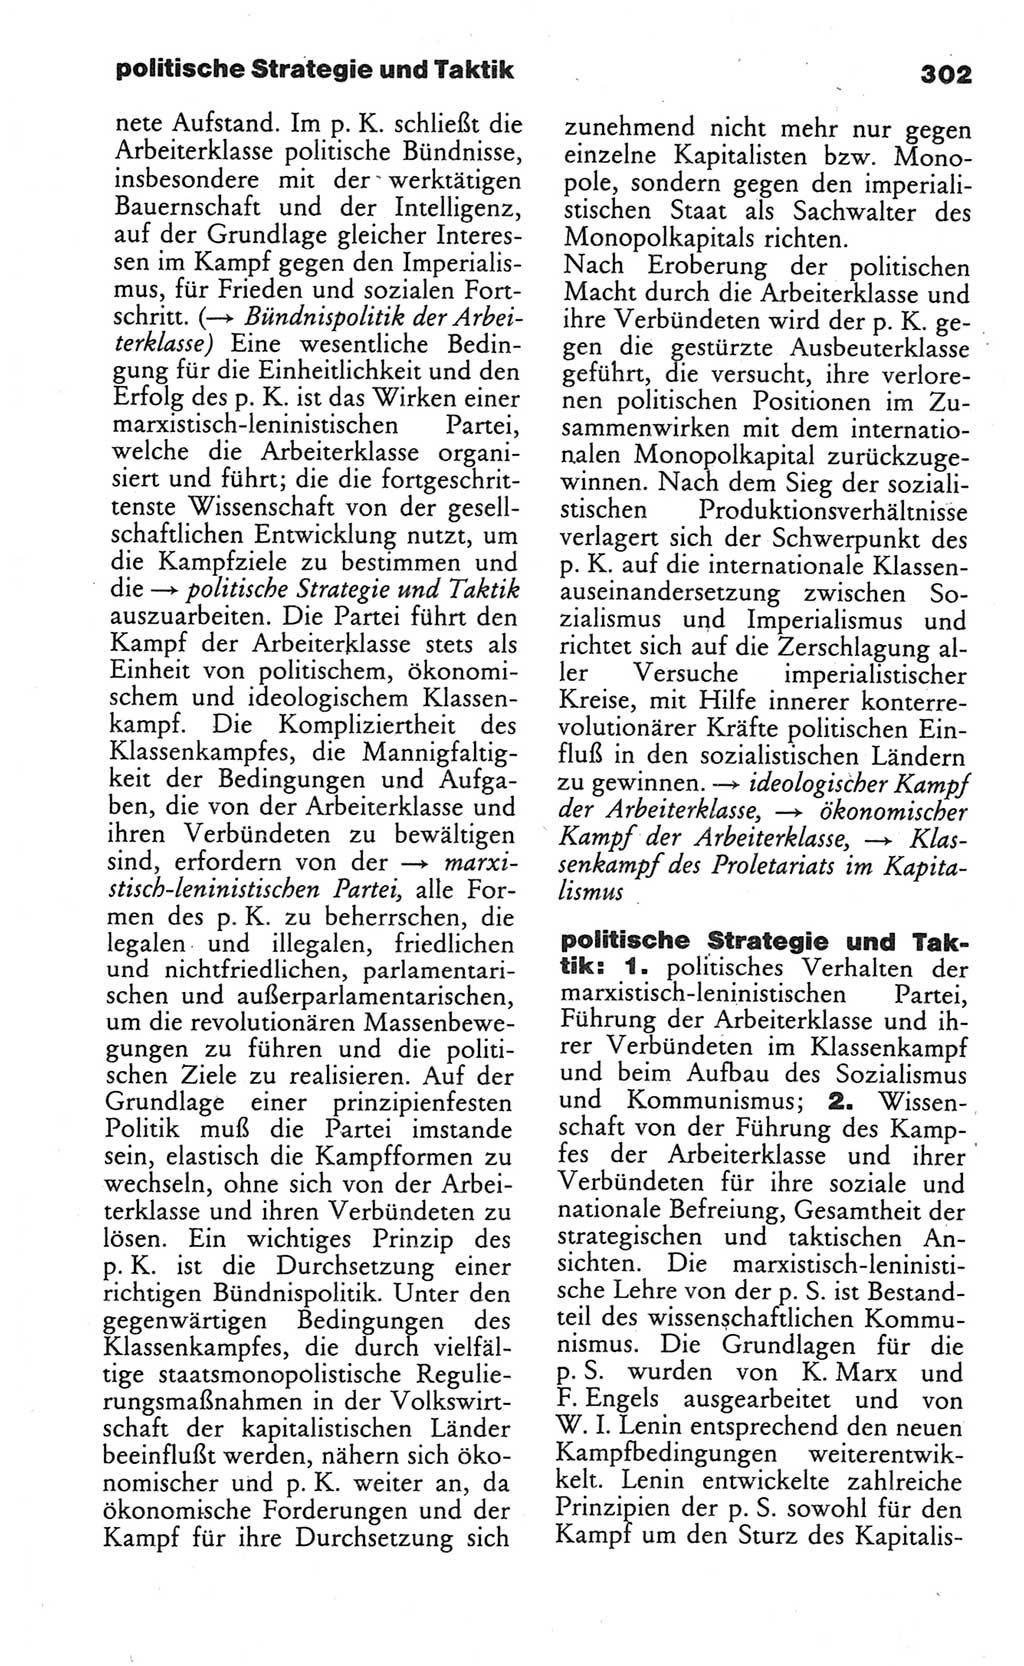 Wörterbuch des wissenschaftlichen Kommunismus [Deutsche Demokratische Republik (DDR)] 1984, Seite 302 (Wb. wiss. Komm. DDR 1984, S. 302)